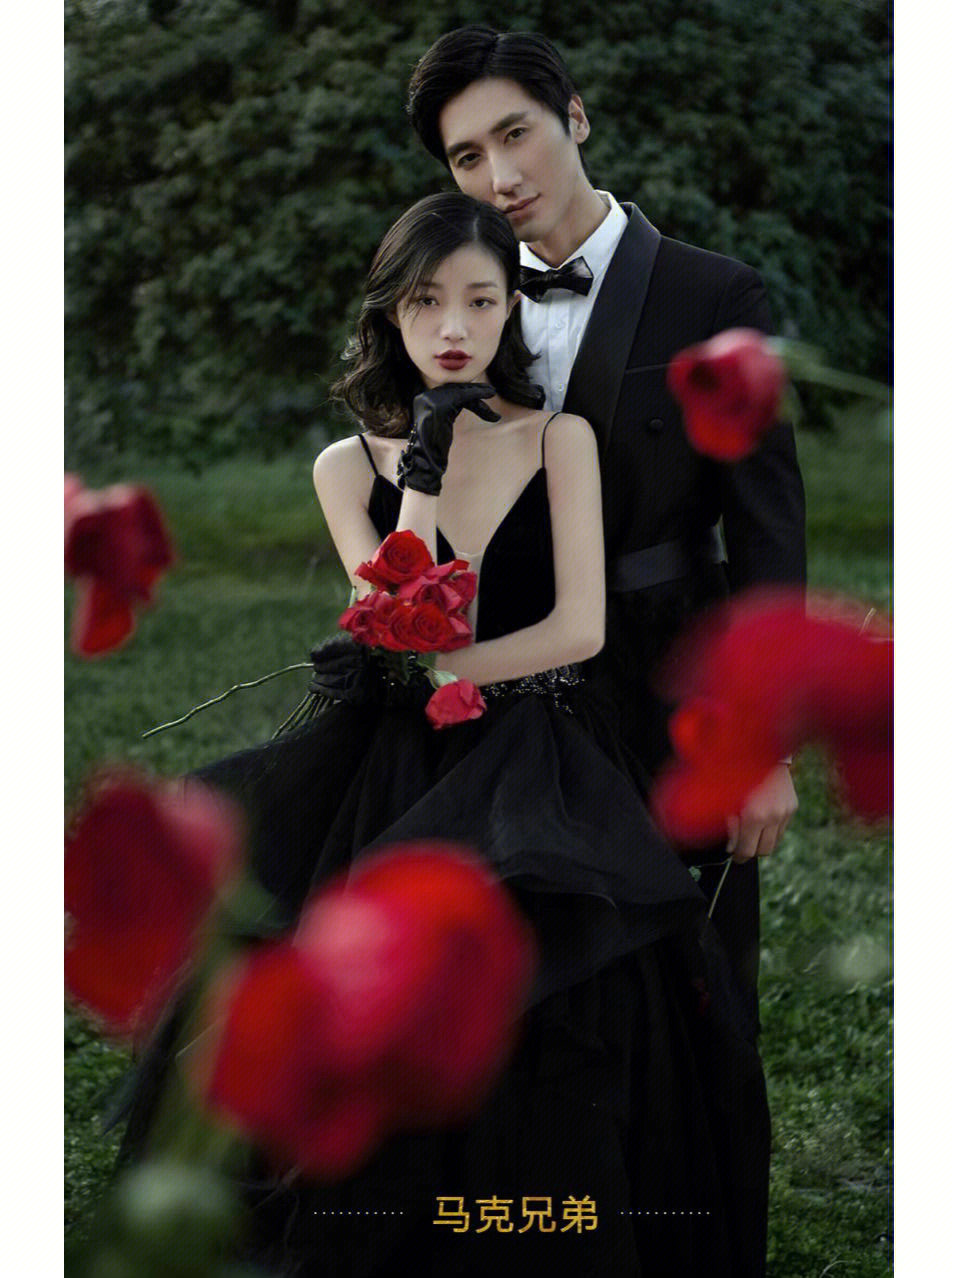 一眼沦陷[爱心]推荐森系黑纱婚纱照红色玫瑰加上黑色纱裙[爱心]呈现出